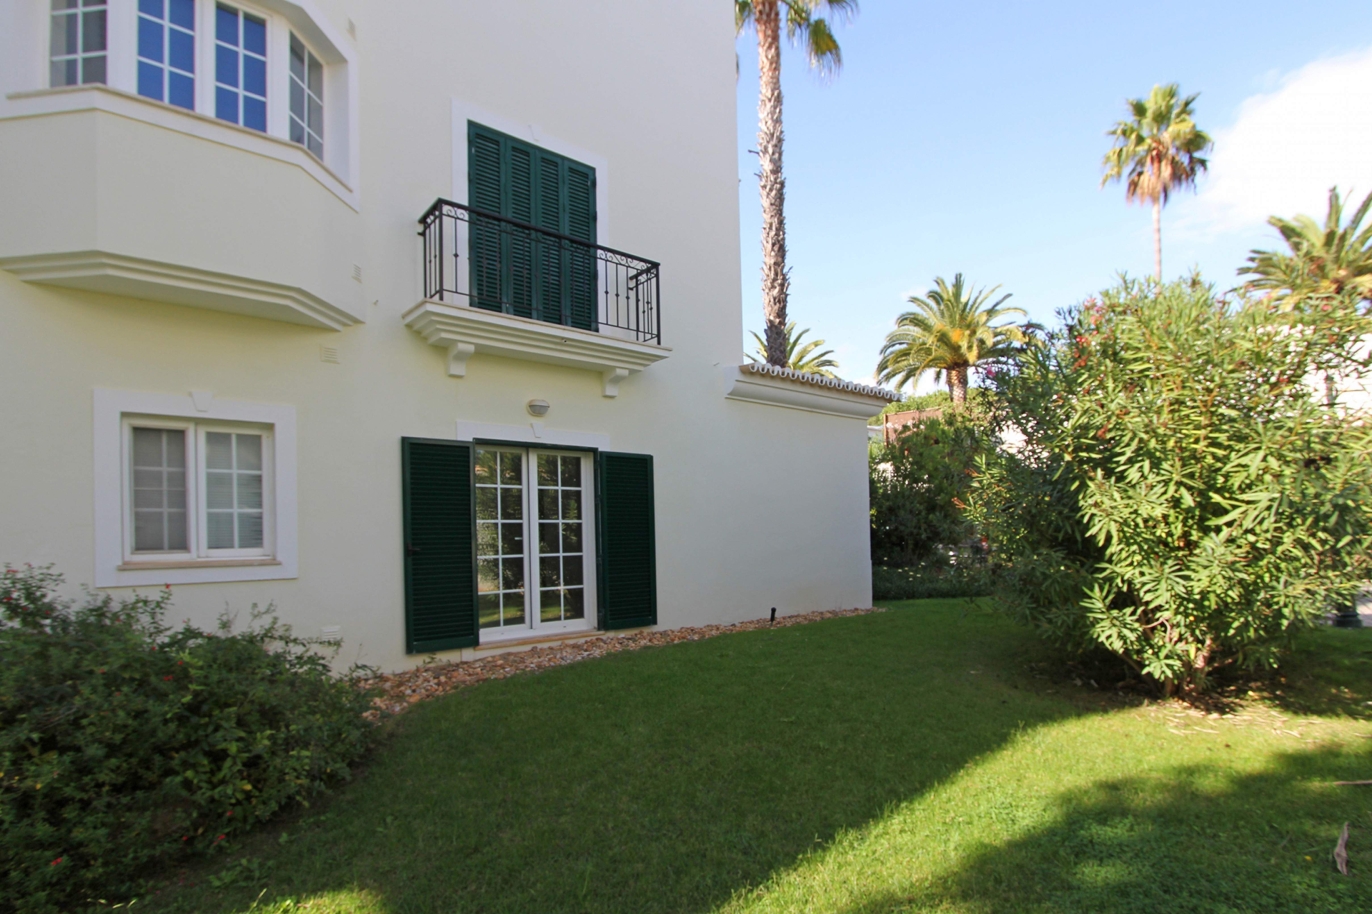 Appartement zu verkaufen, Strandnähe, Vale do Lobo, Algarve, Portugal_120380